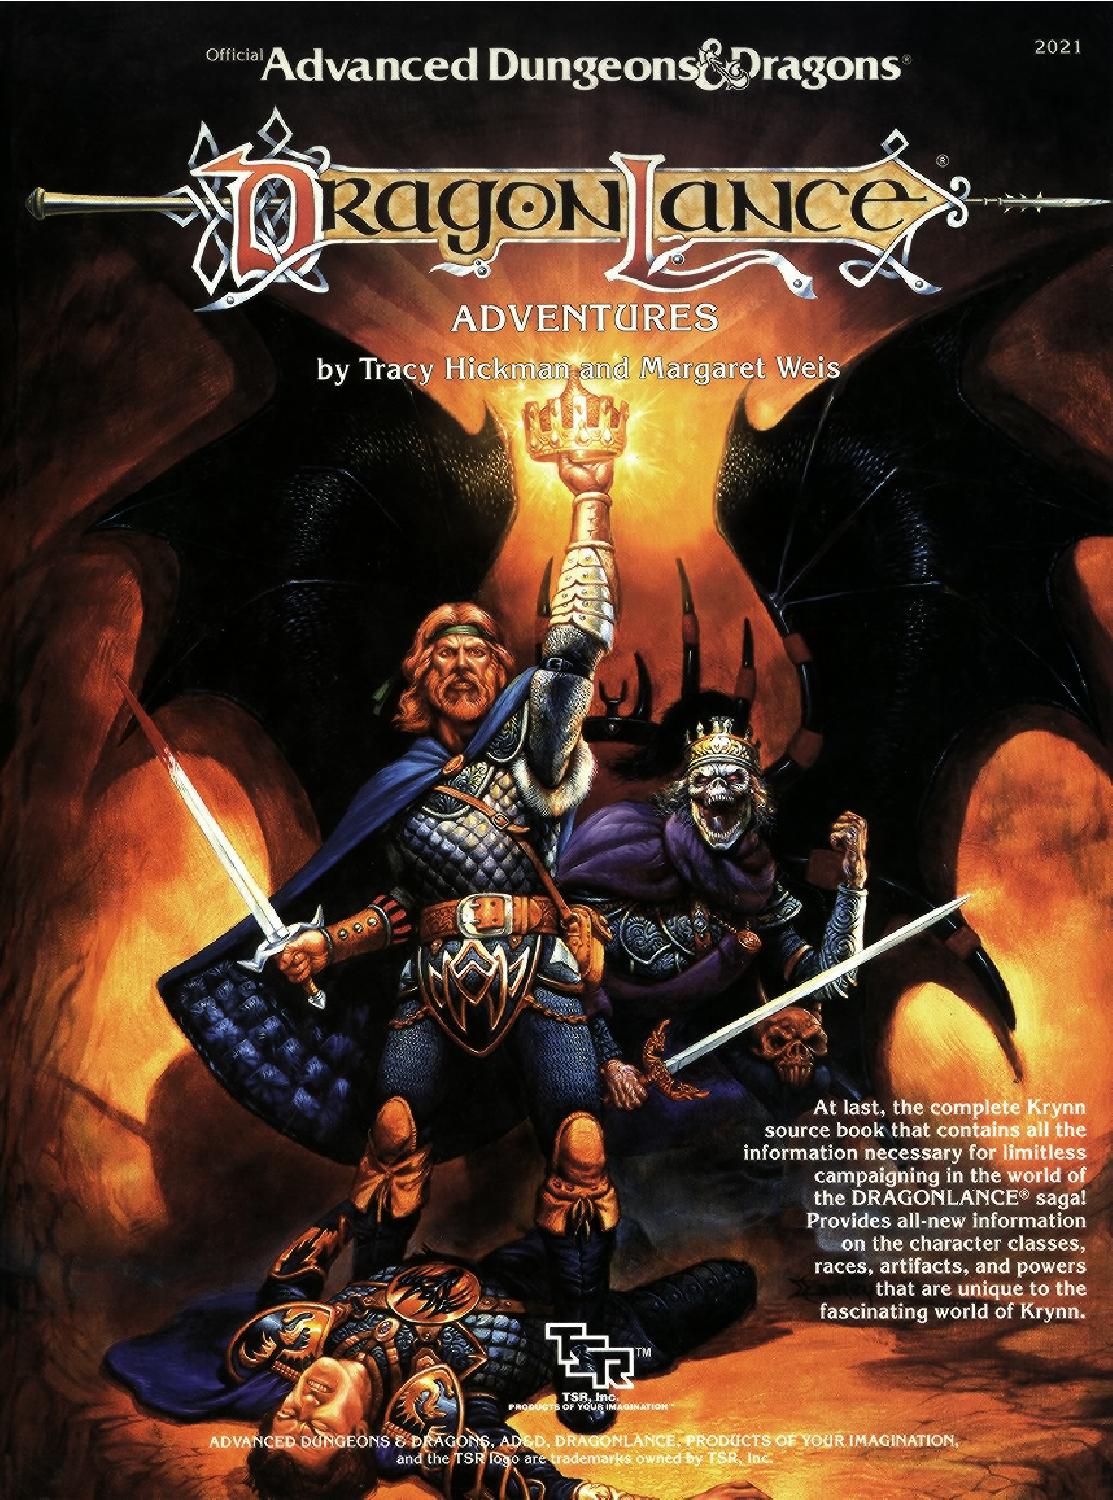 Dragonlance against the darkmaster